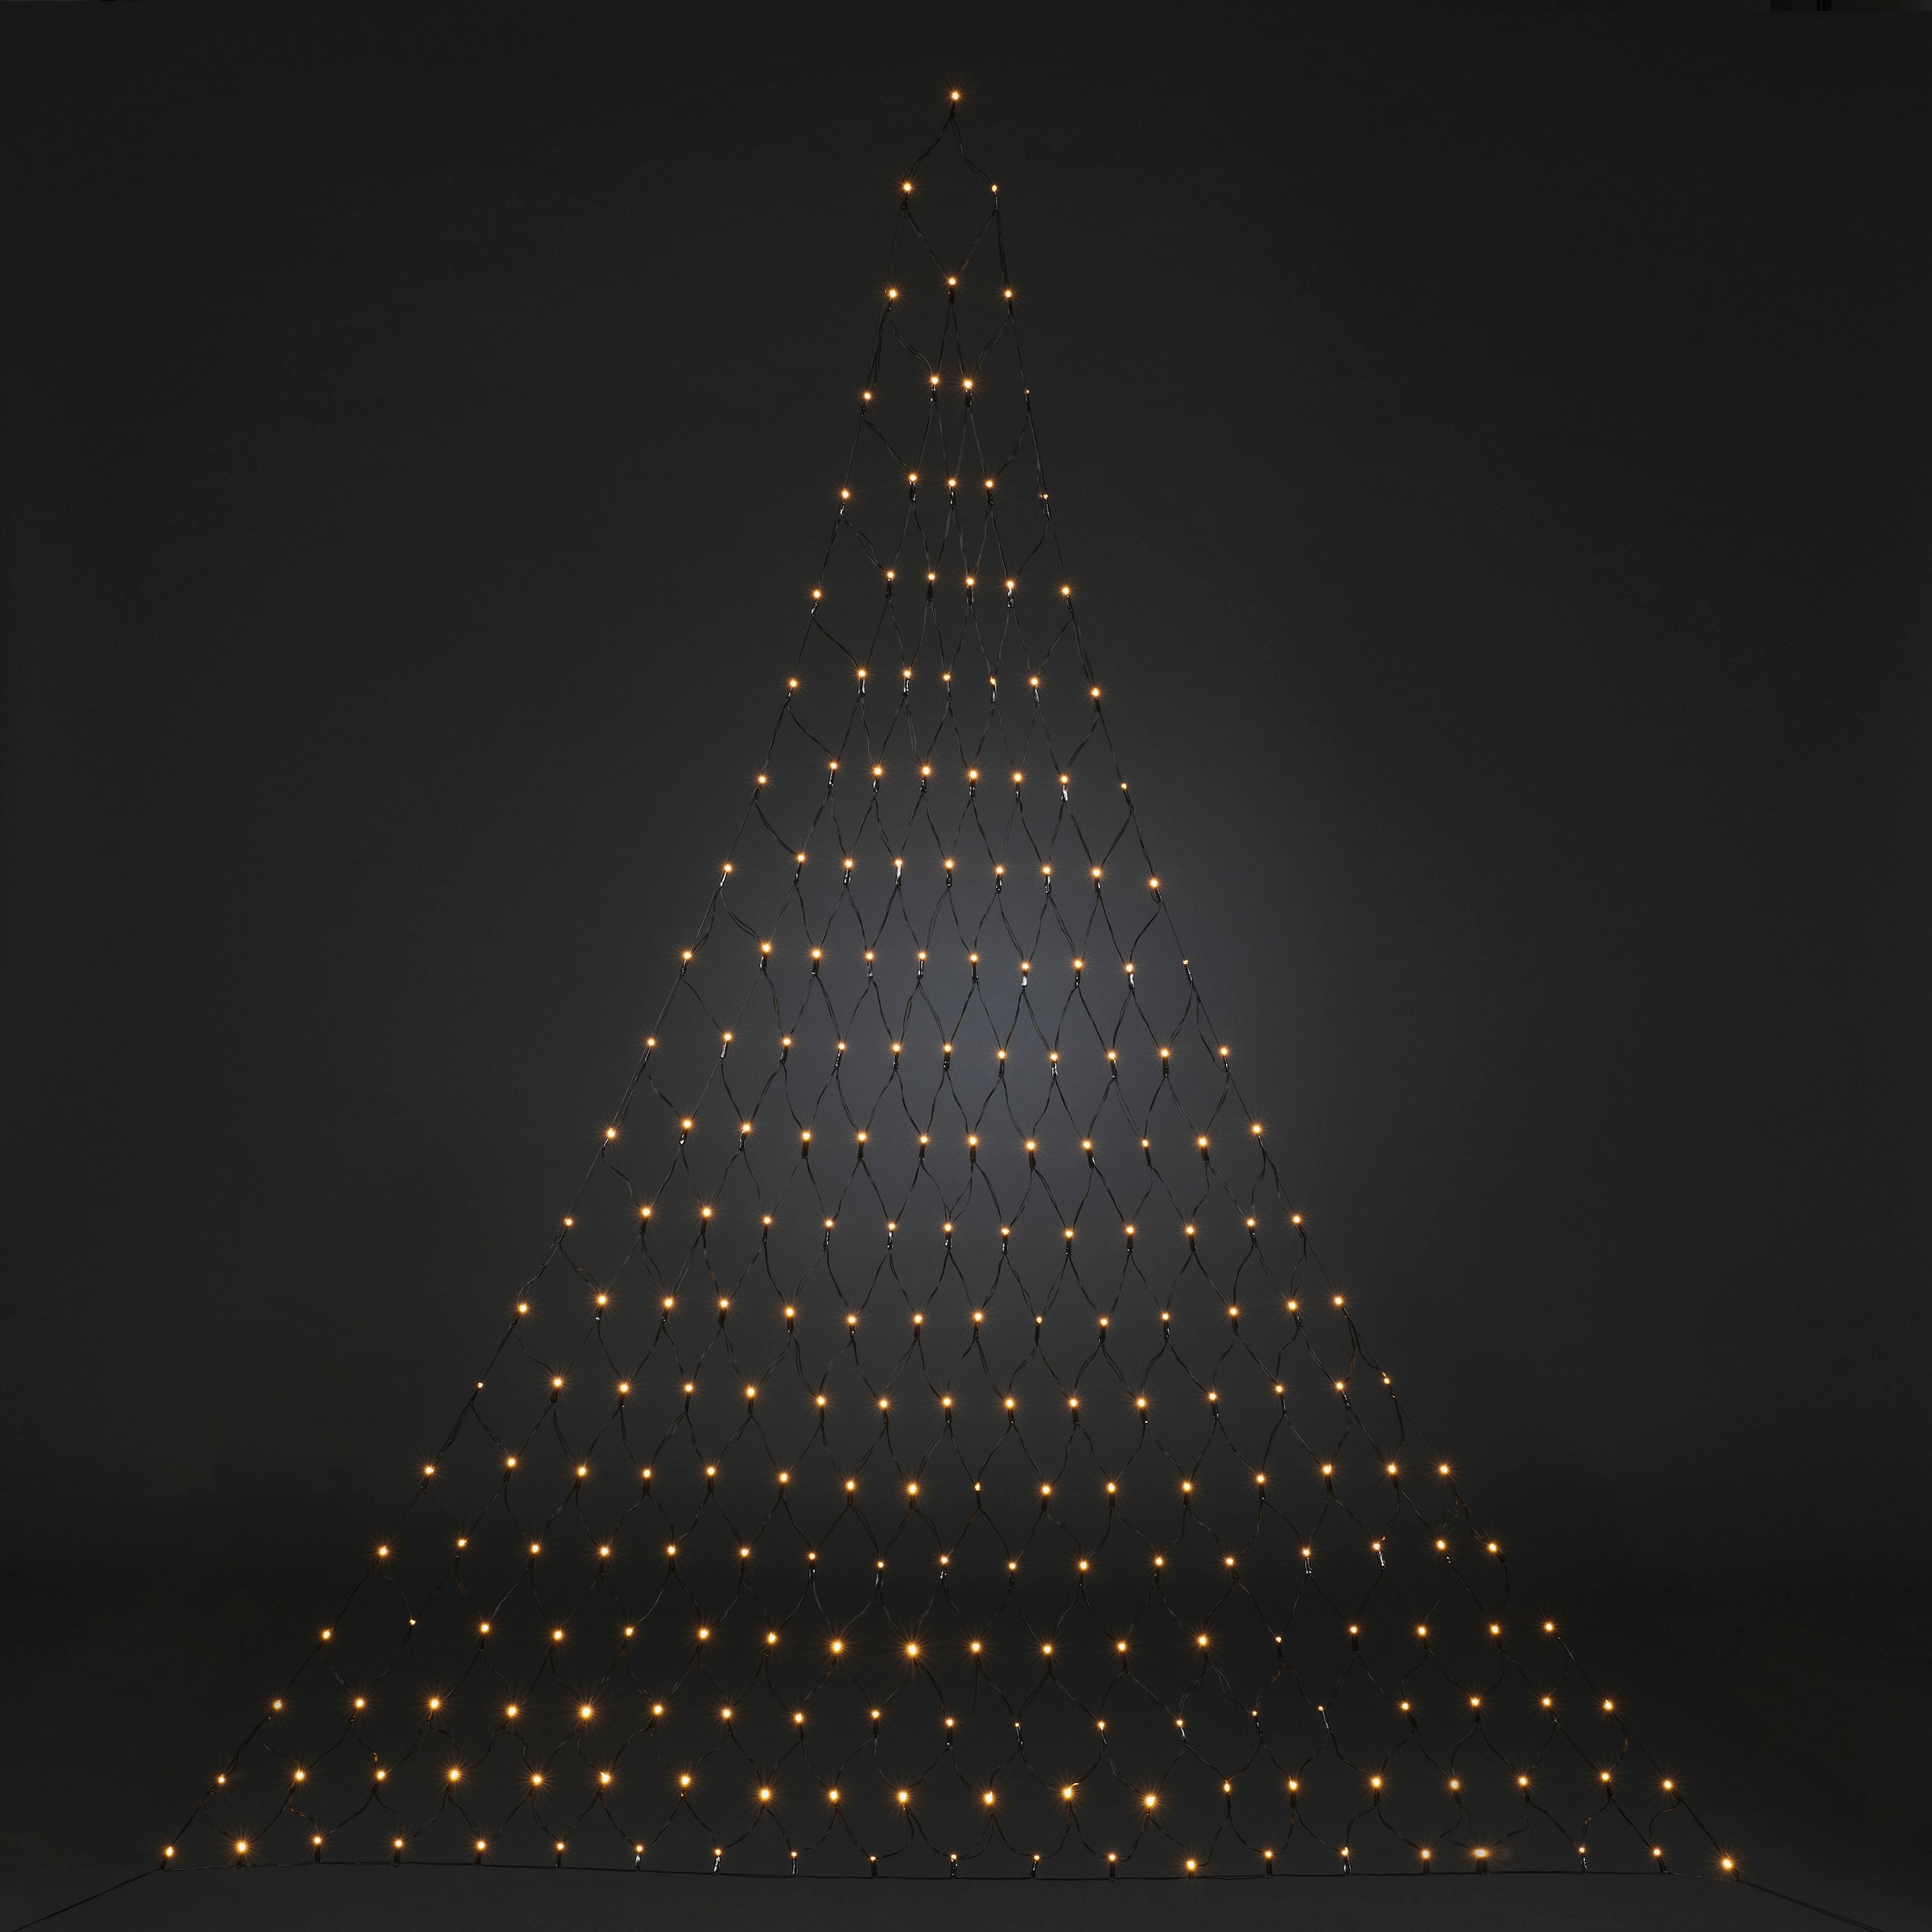 KONSTSMIDE LED-Lichternetz »Triangel«, 231 St.-flammig, LED Lichternetz, 231 bernsteinfarbene Dioden, Höhe 2,4 m